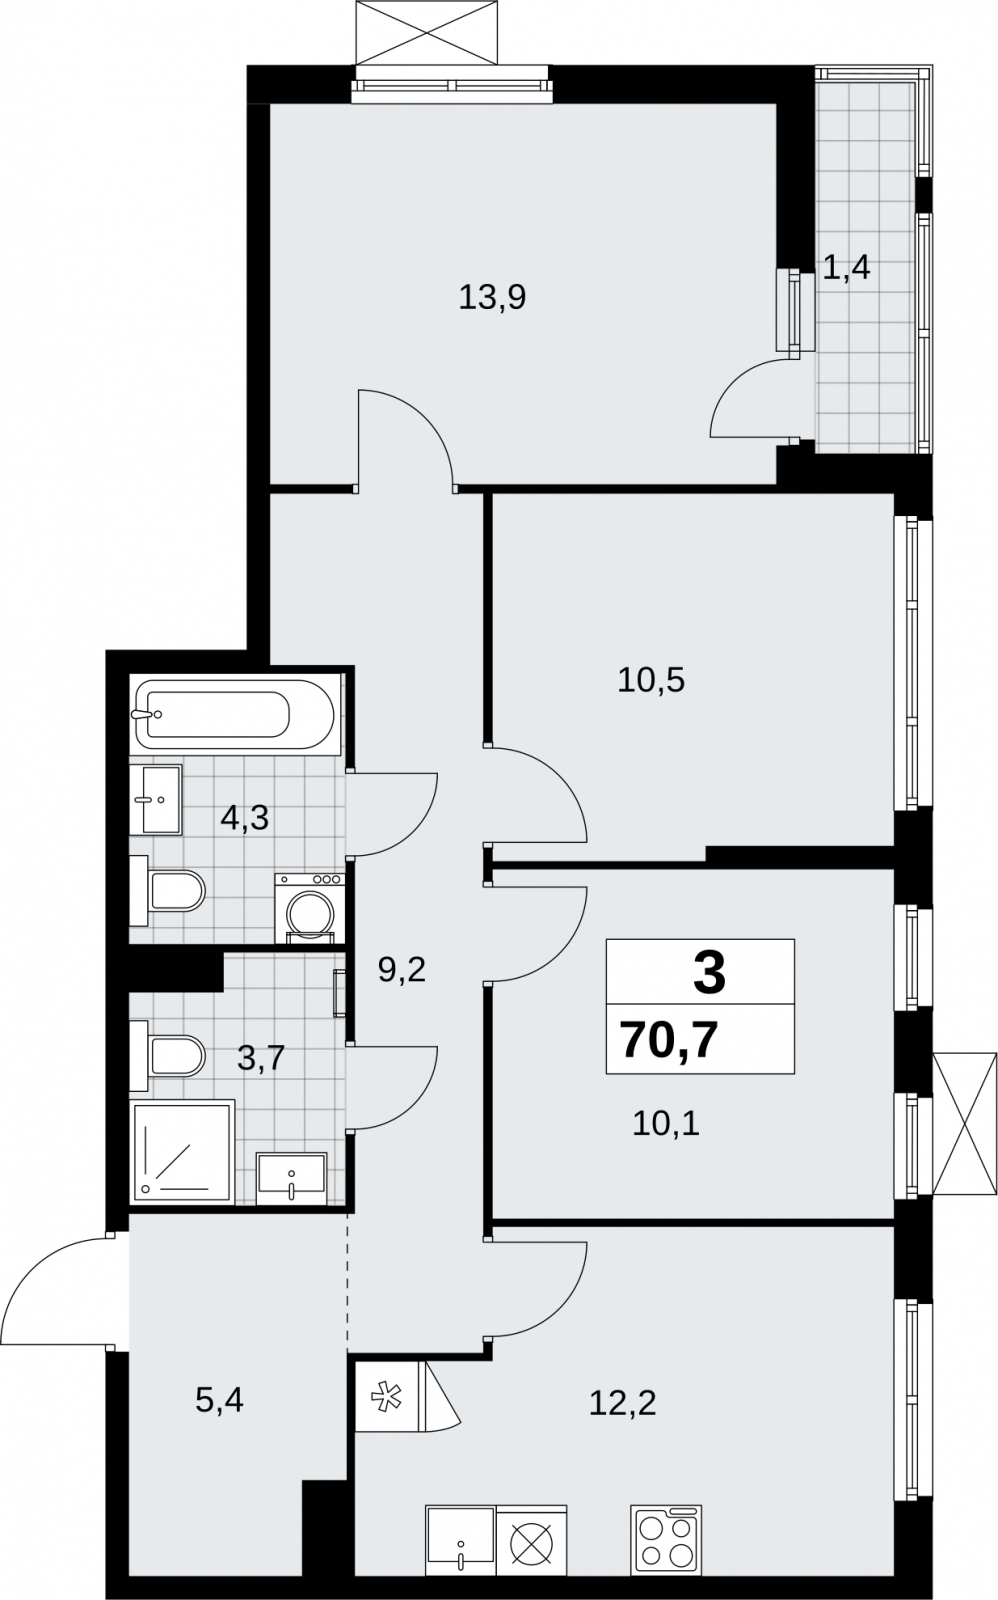 Продается просторная трехкомнатная квартира в новом жилом комплексе, у метро